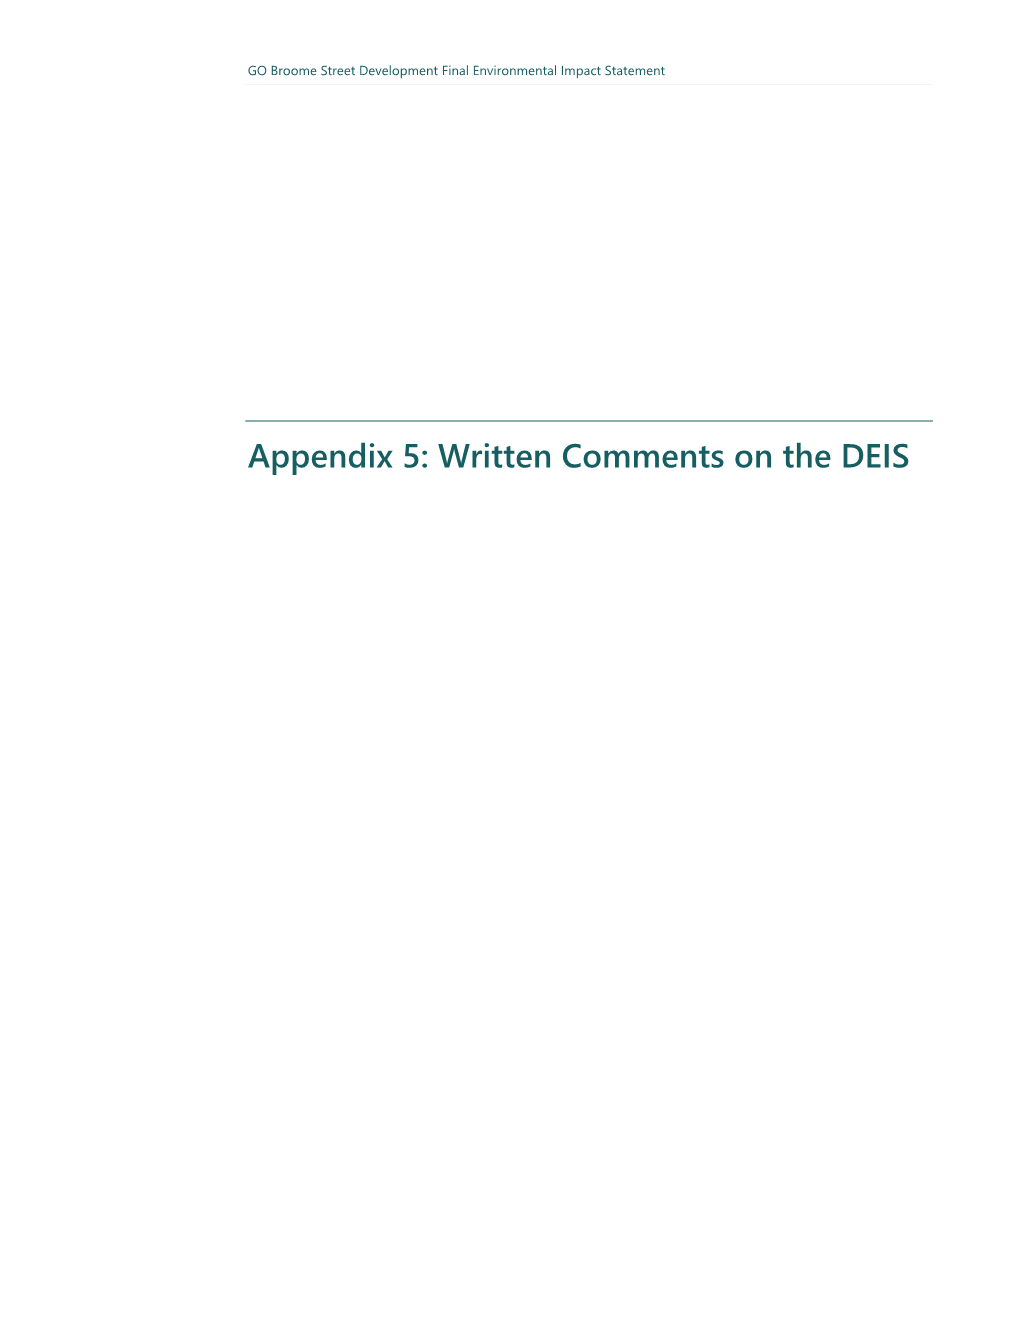 Appendix 5: Written Comments on the DEIS